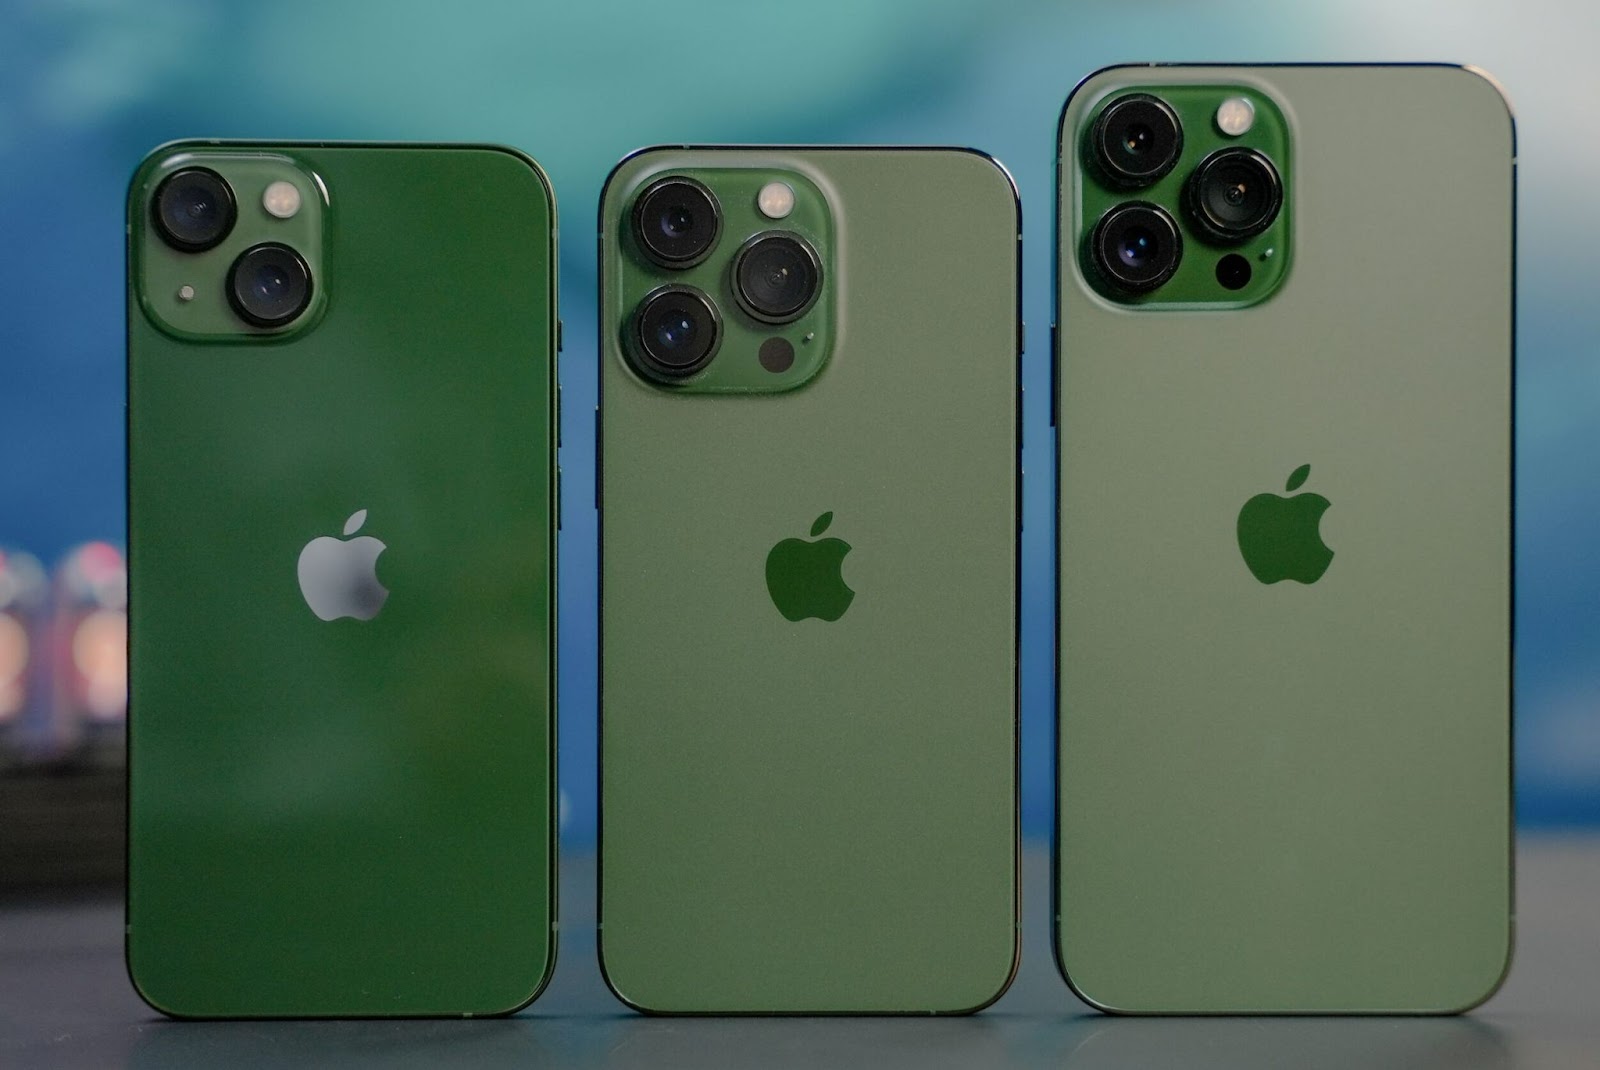 iPhone 13 Pro Max xanh rêu: Hình ảnh liên quan đến iPhone 13 Pro Max màu xanh rêu sẽ khiến bạn say đắm vì sự tinh tế và hiện đại. Hãy thưởng thức những bức ảnh này để cảm nhận được sự khác biệt đến từ chiếc điện thoại cao cấp này.